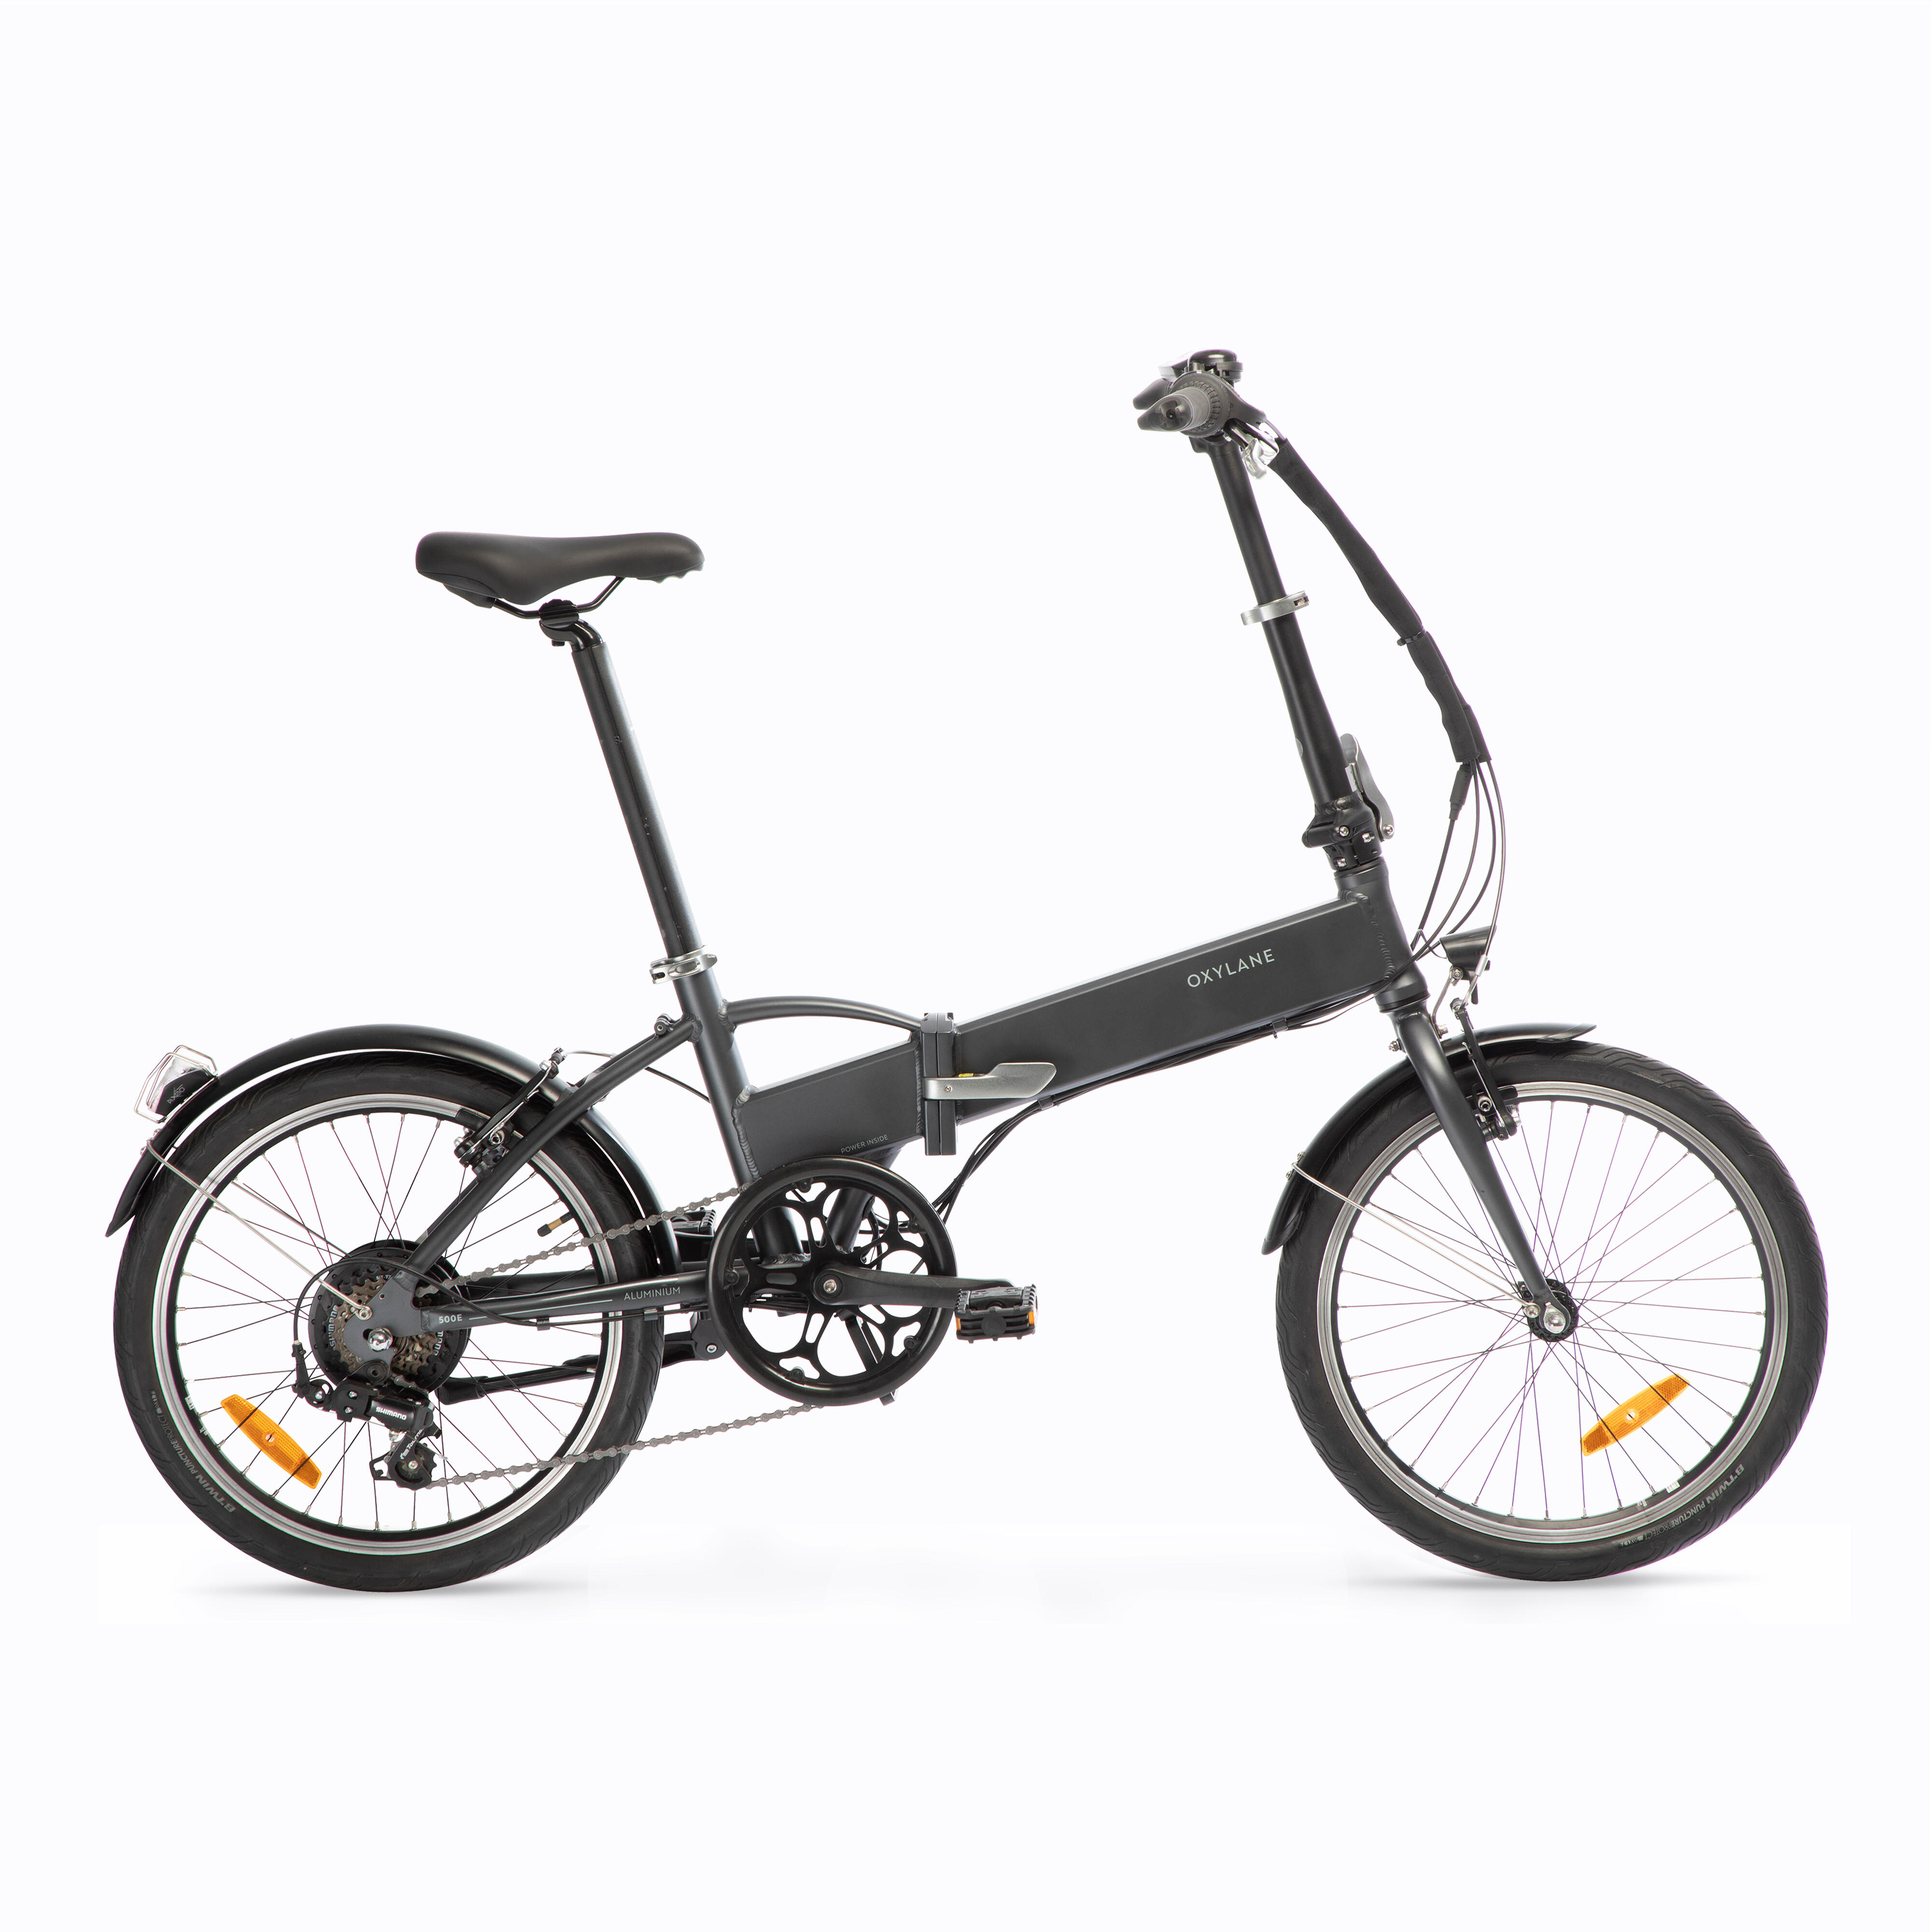 Bicicletă pliabilă cu asistență electrică TILT 500 E Gri-Negru BTWIN 500